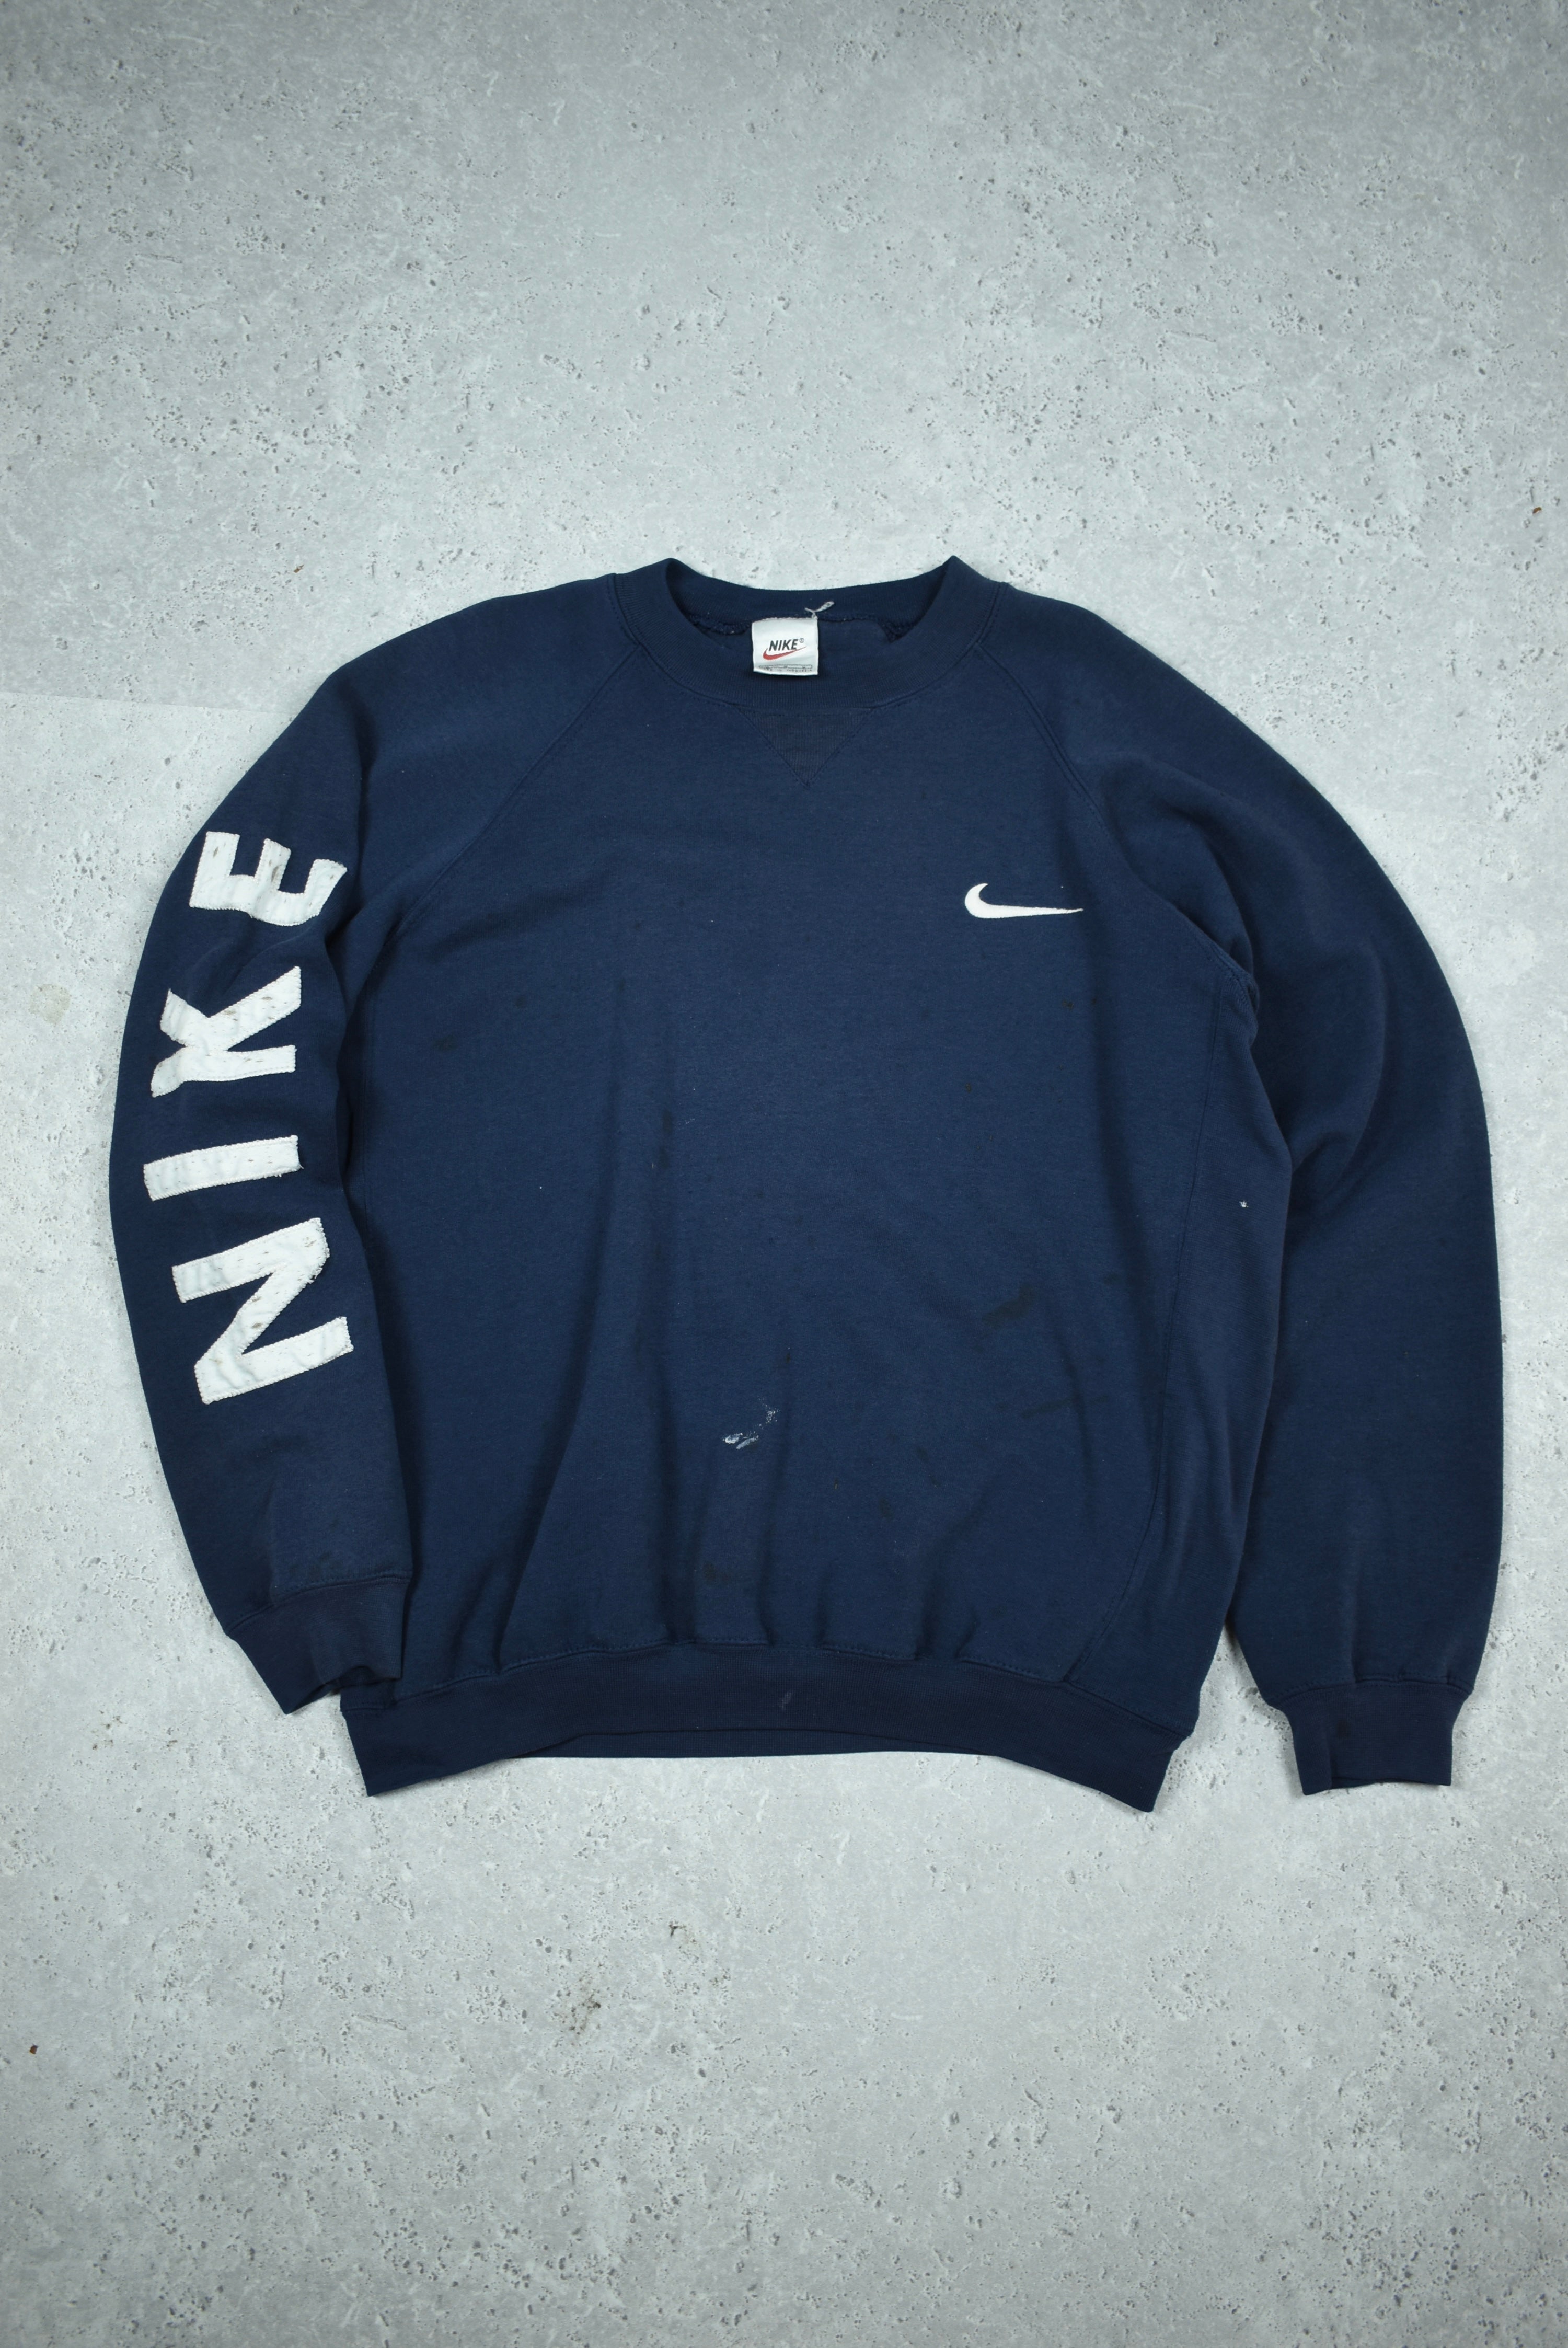 Vintage Nike Embroidery Logo Sweatshirt Medium